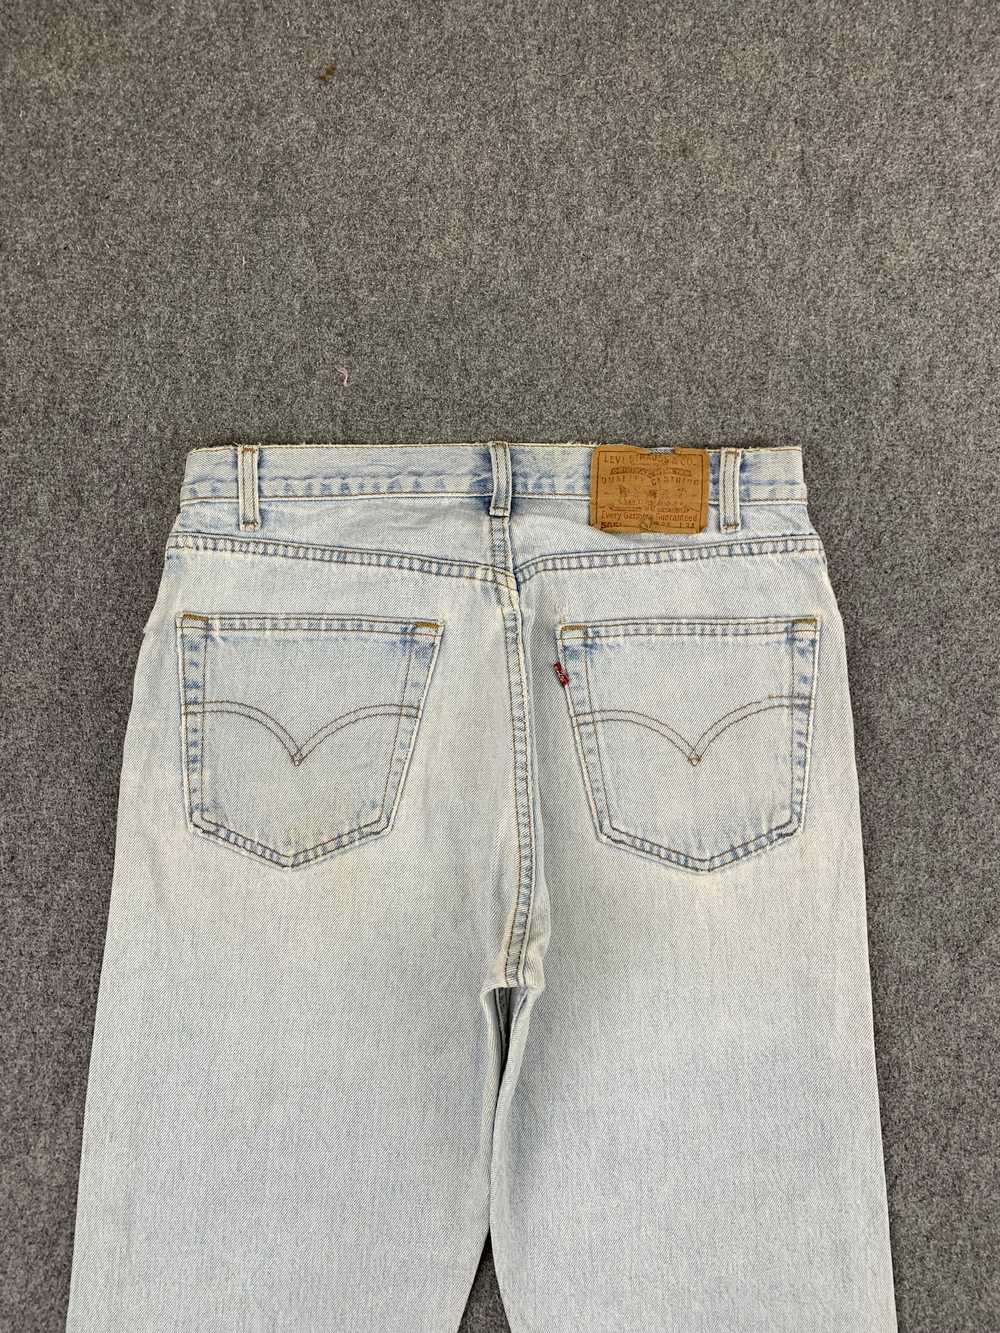 Vintage - Vintage 90s Levis 505 Light Wash Jeans - image 12